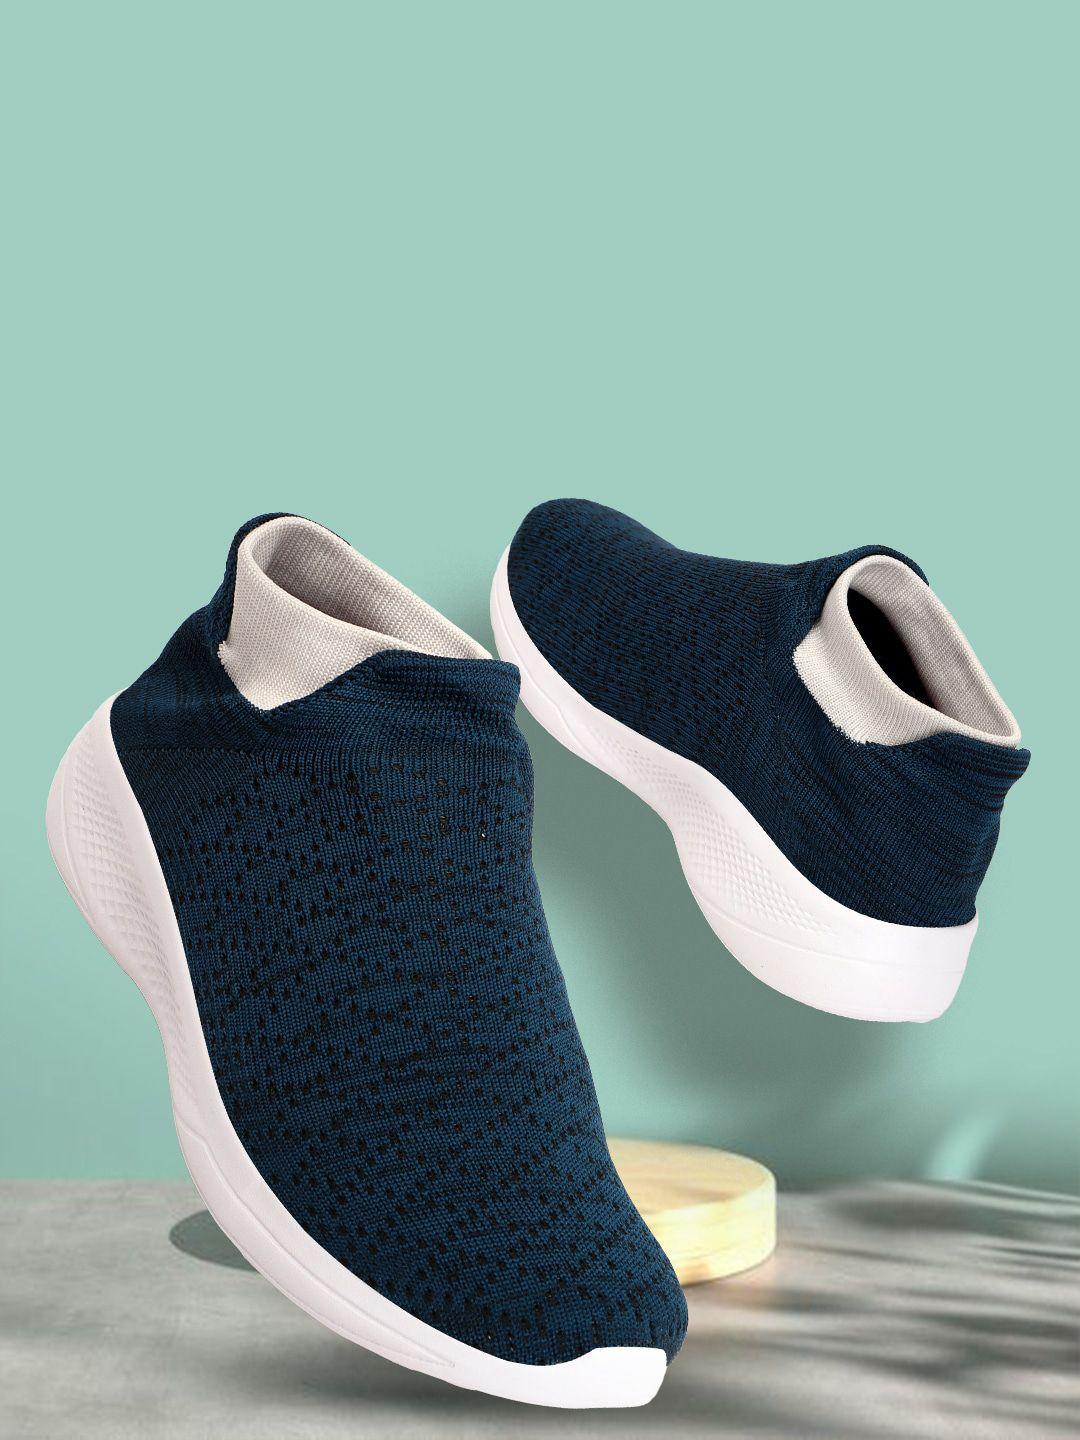 hrx-by-hrithik-roshan-men-teal-blue-and-white-woven-design-lightweight-slip-on-sneakers